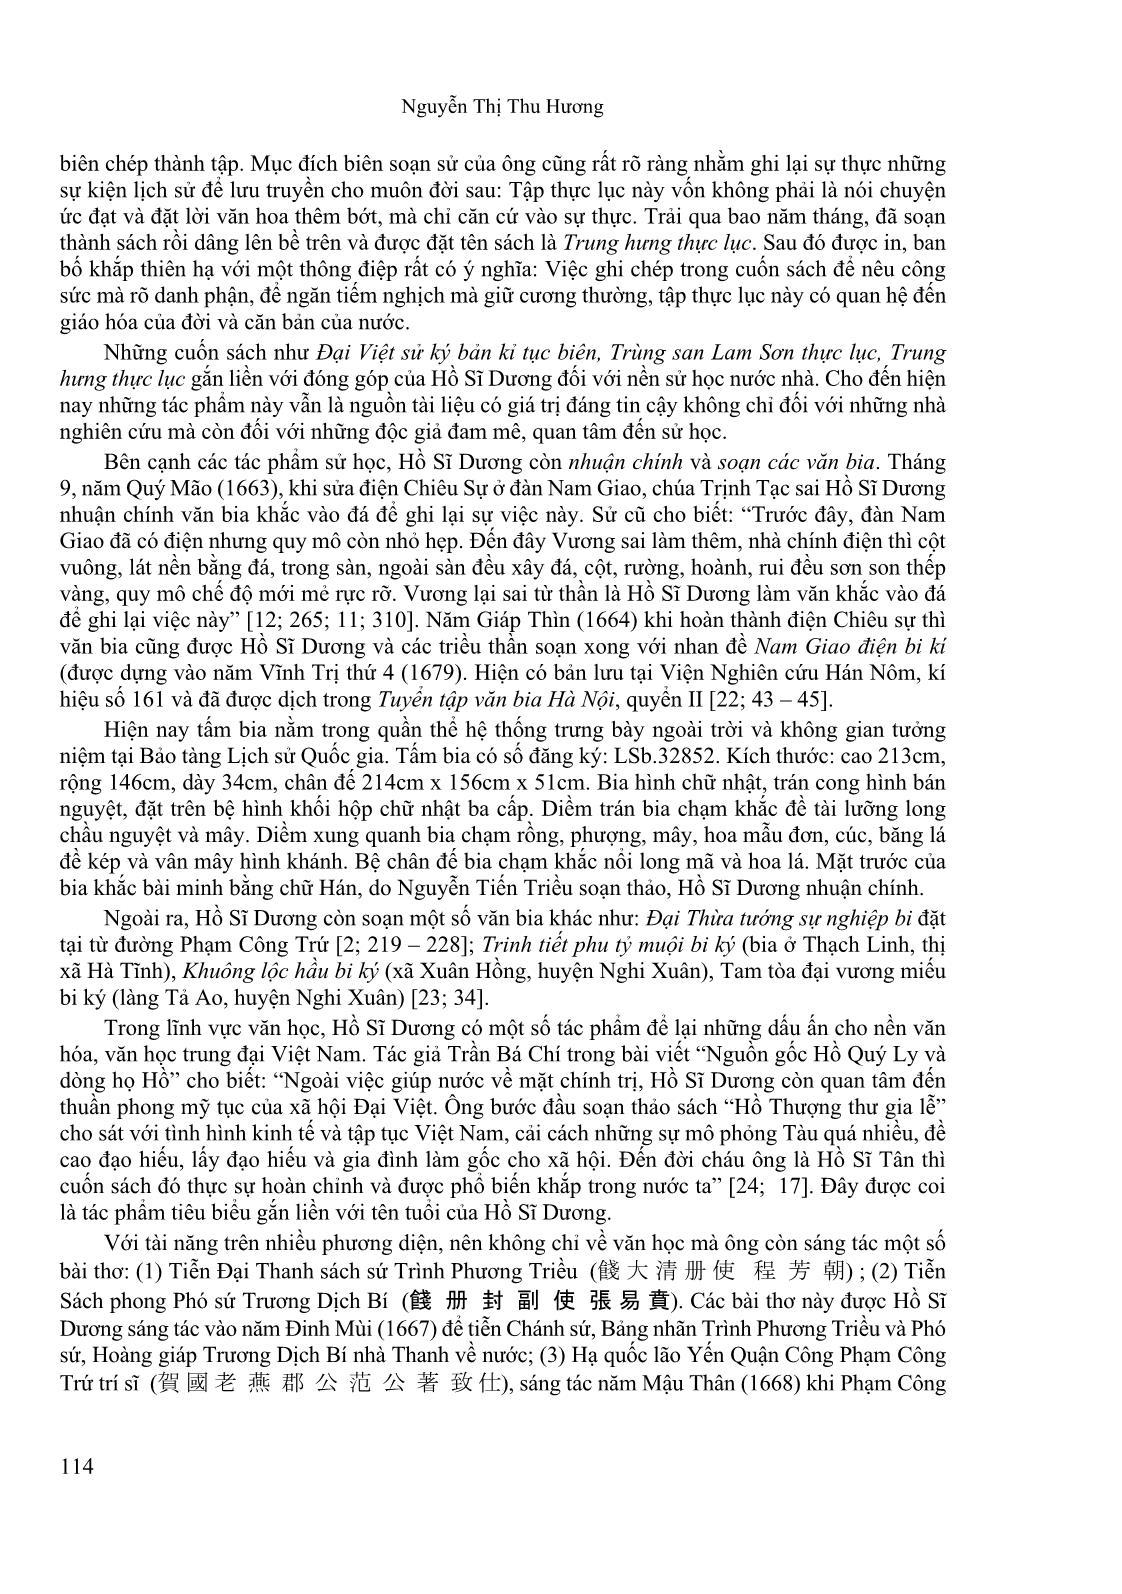 Tham tụng Hồ Sĩ Dương với những đóng góp nổi bật trong lịch sử Đại Việt thế kỉ XVII trang 8